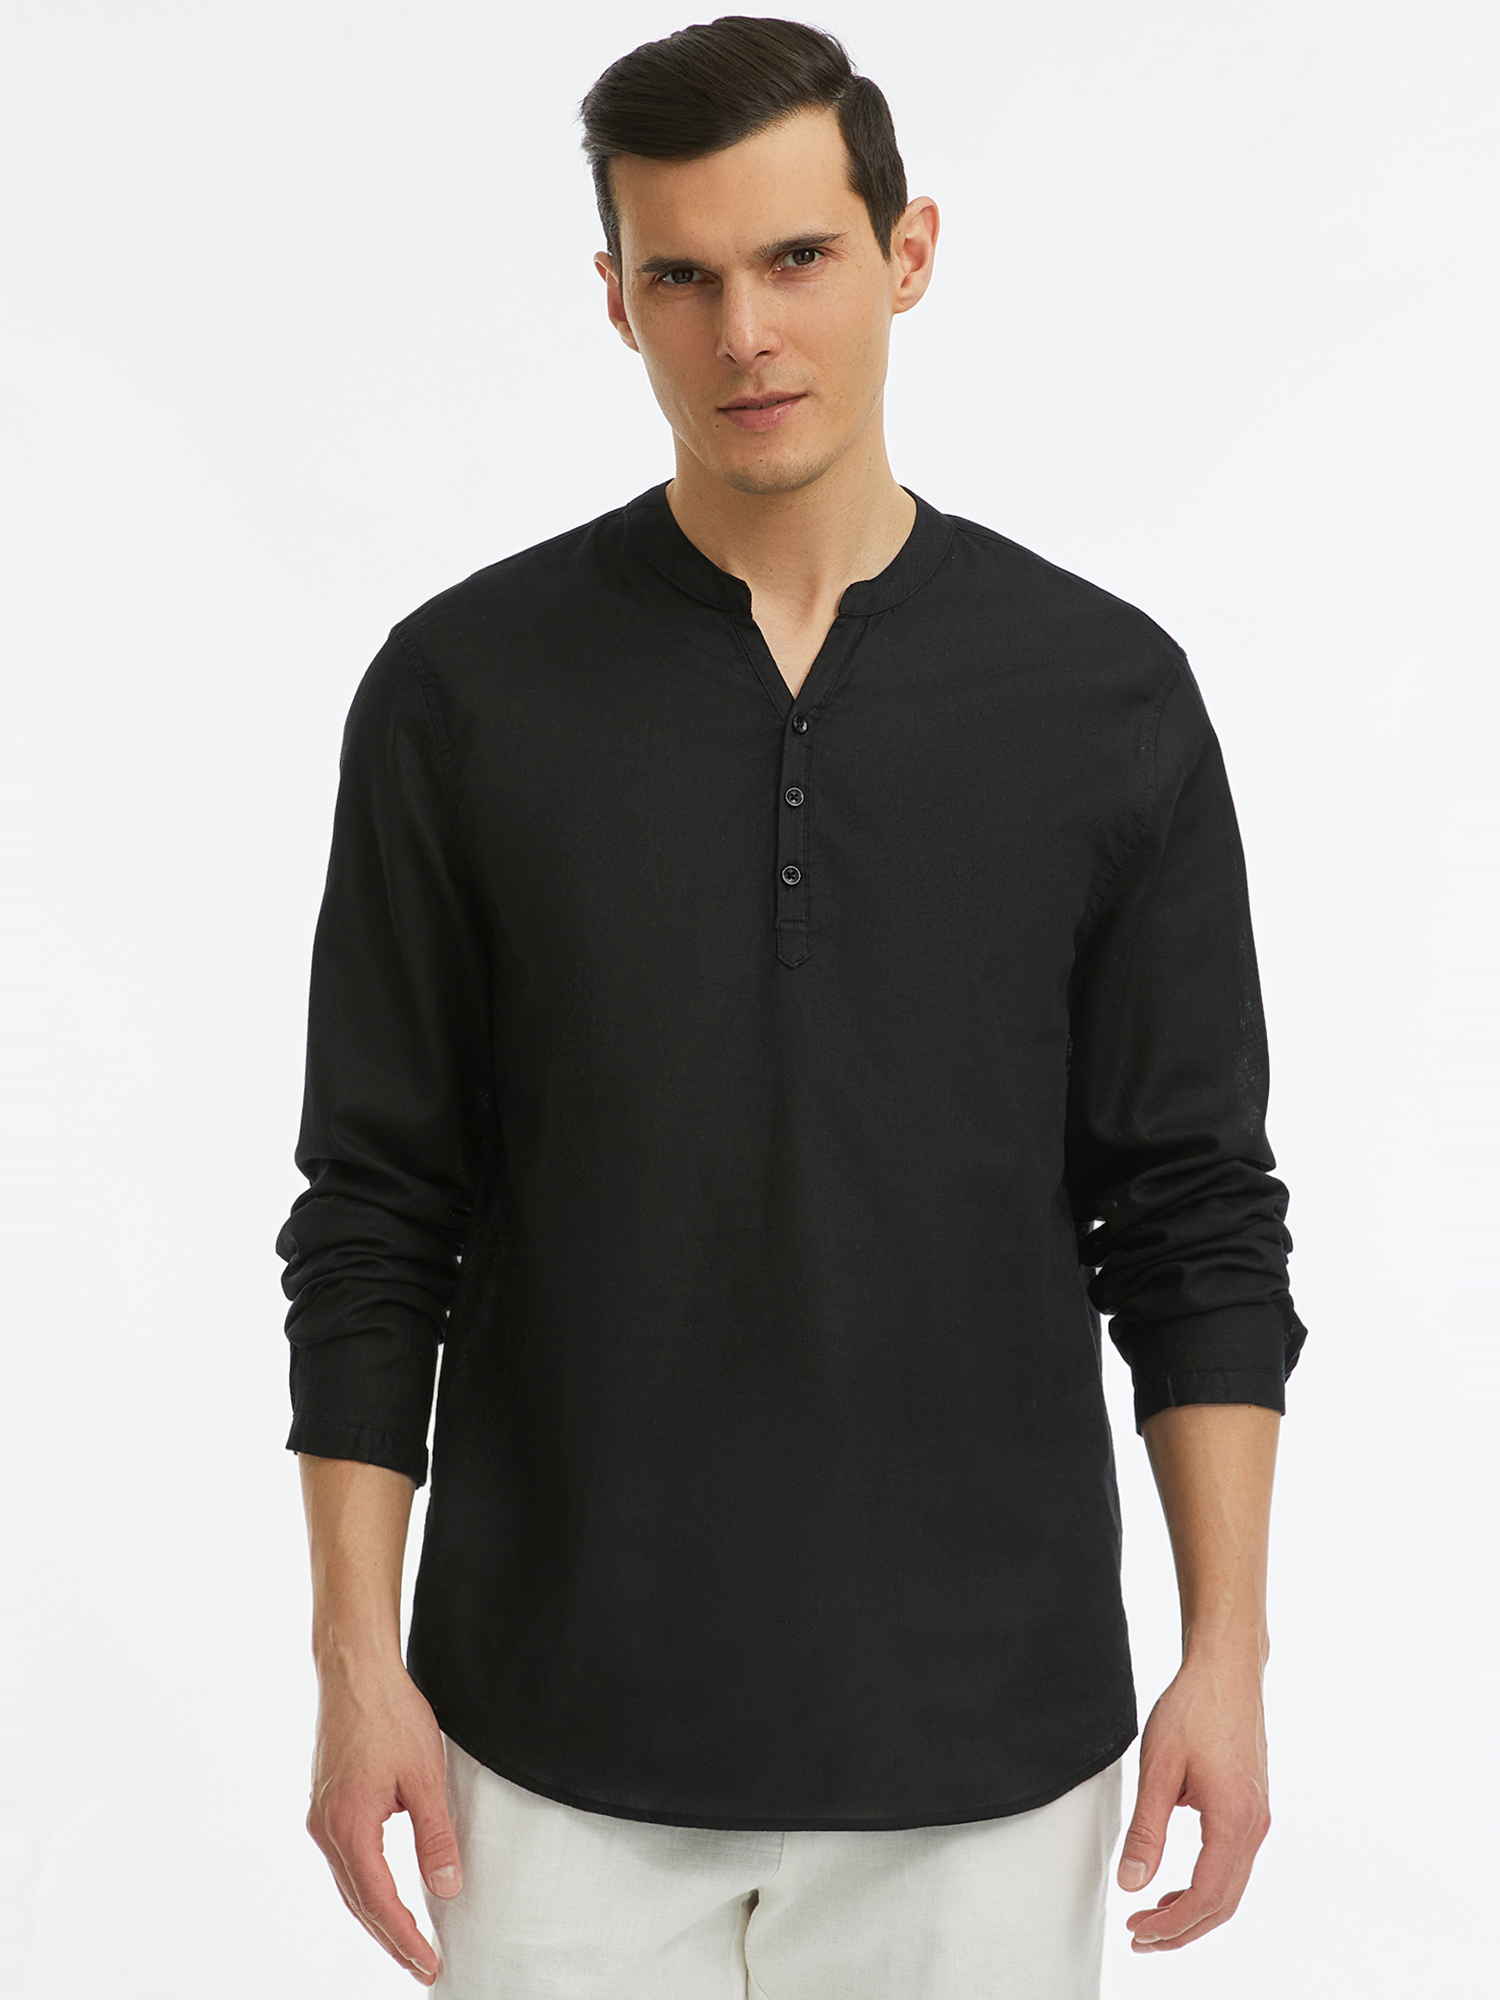 Рубашка мужская oodji 3B320002M-5 черная M - купить в Москве, цены на Мегамаркет | 100067647400